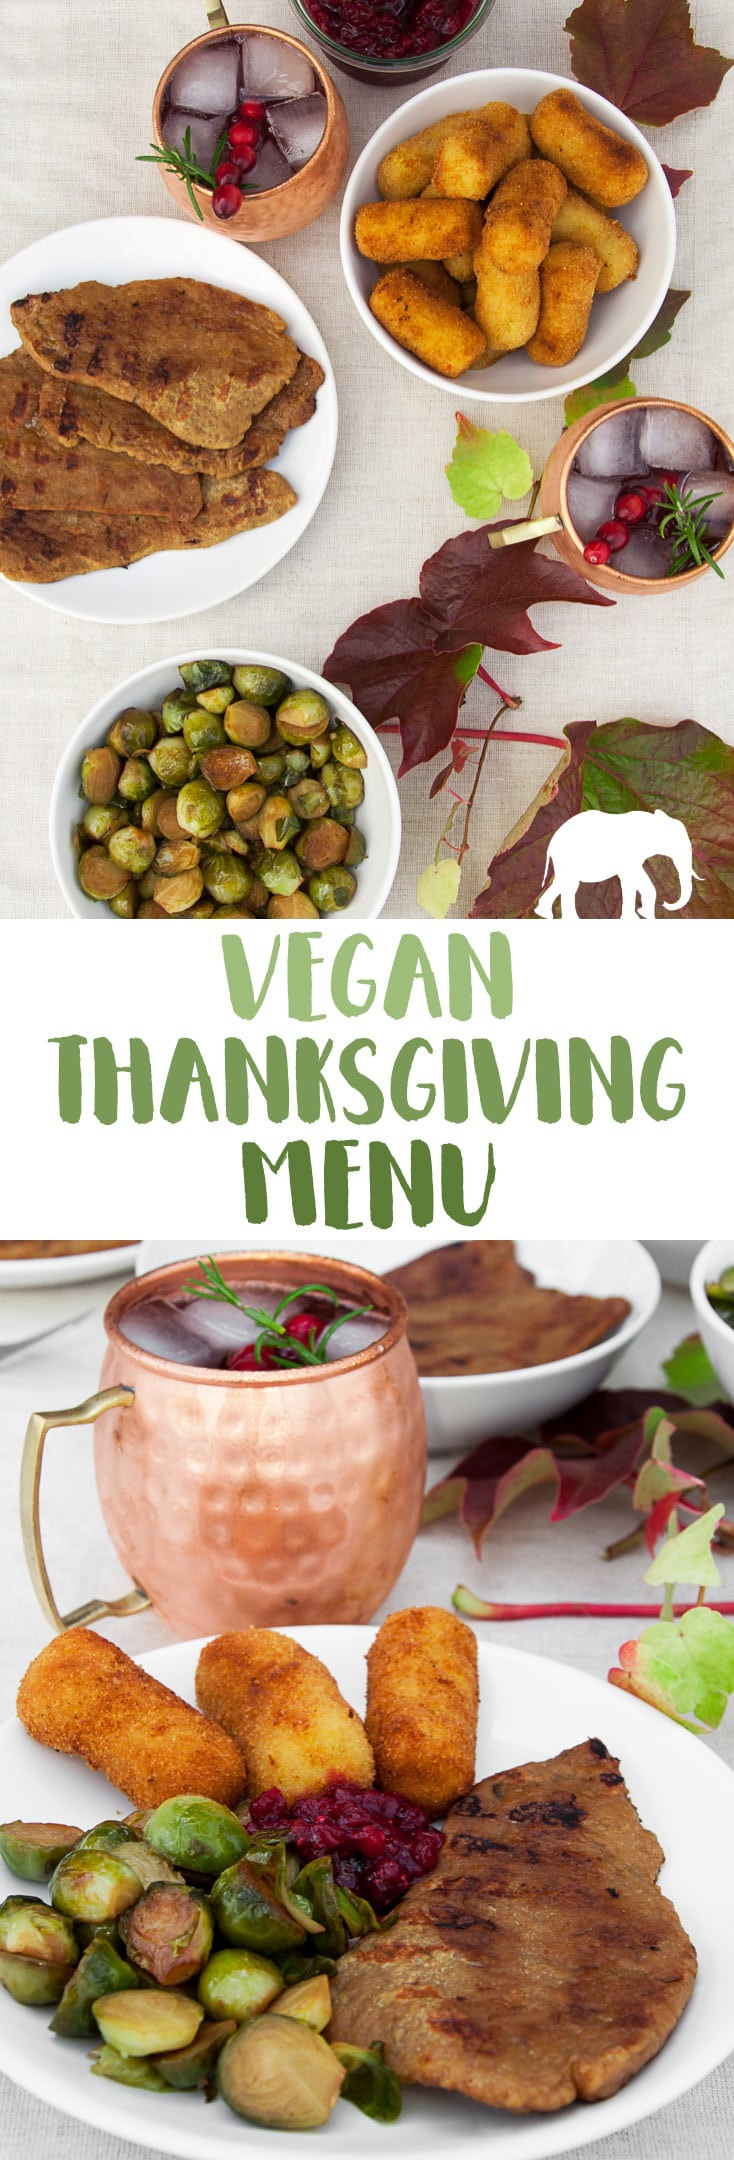 Vegan Thanksgiving 2019
 Vegan Thanksgiving Menu Recipes